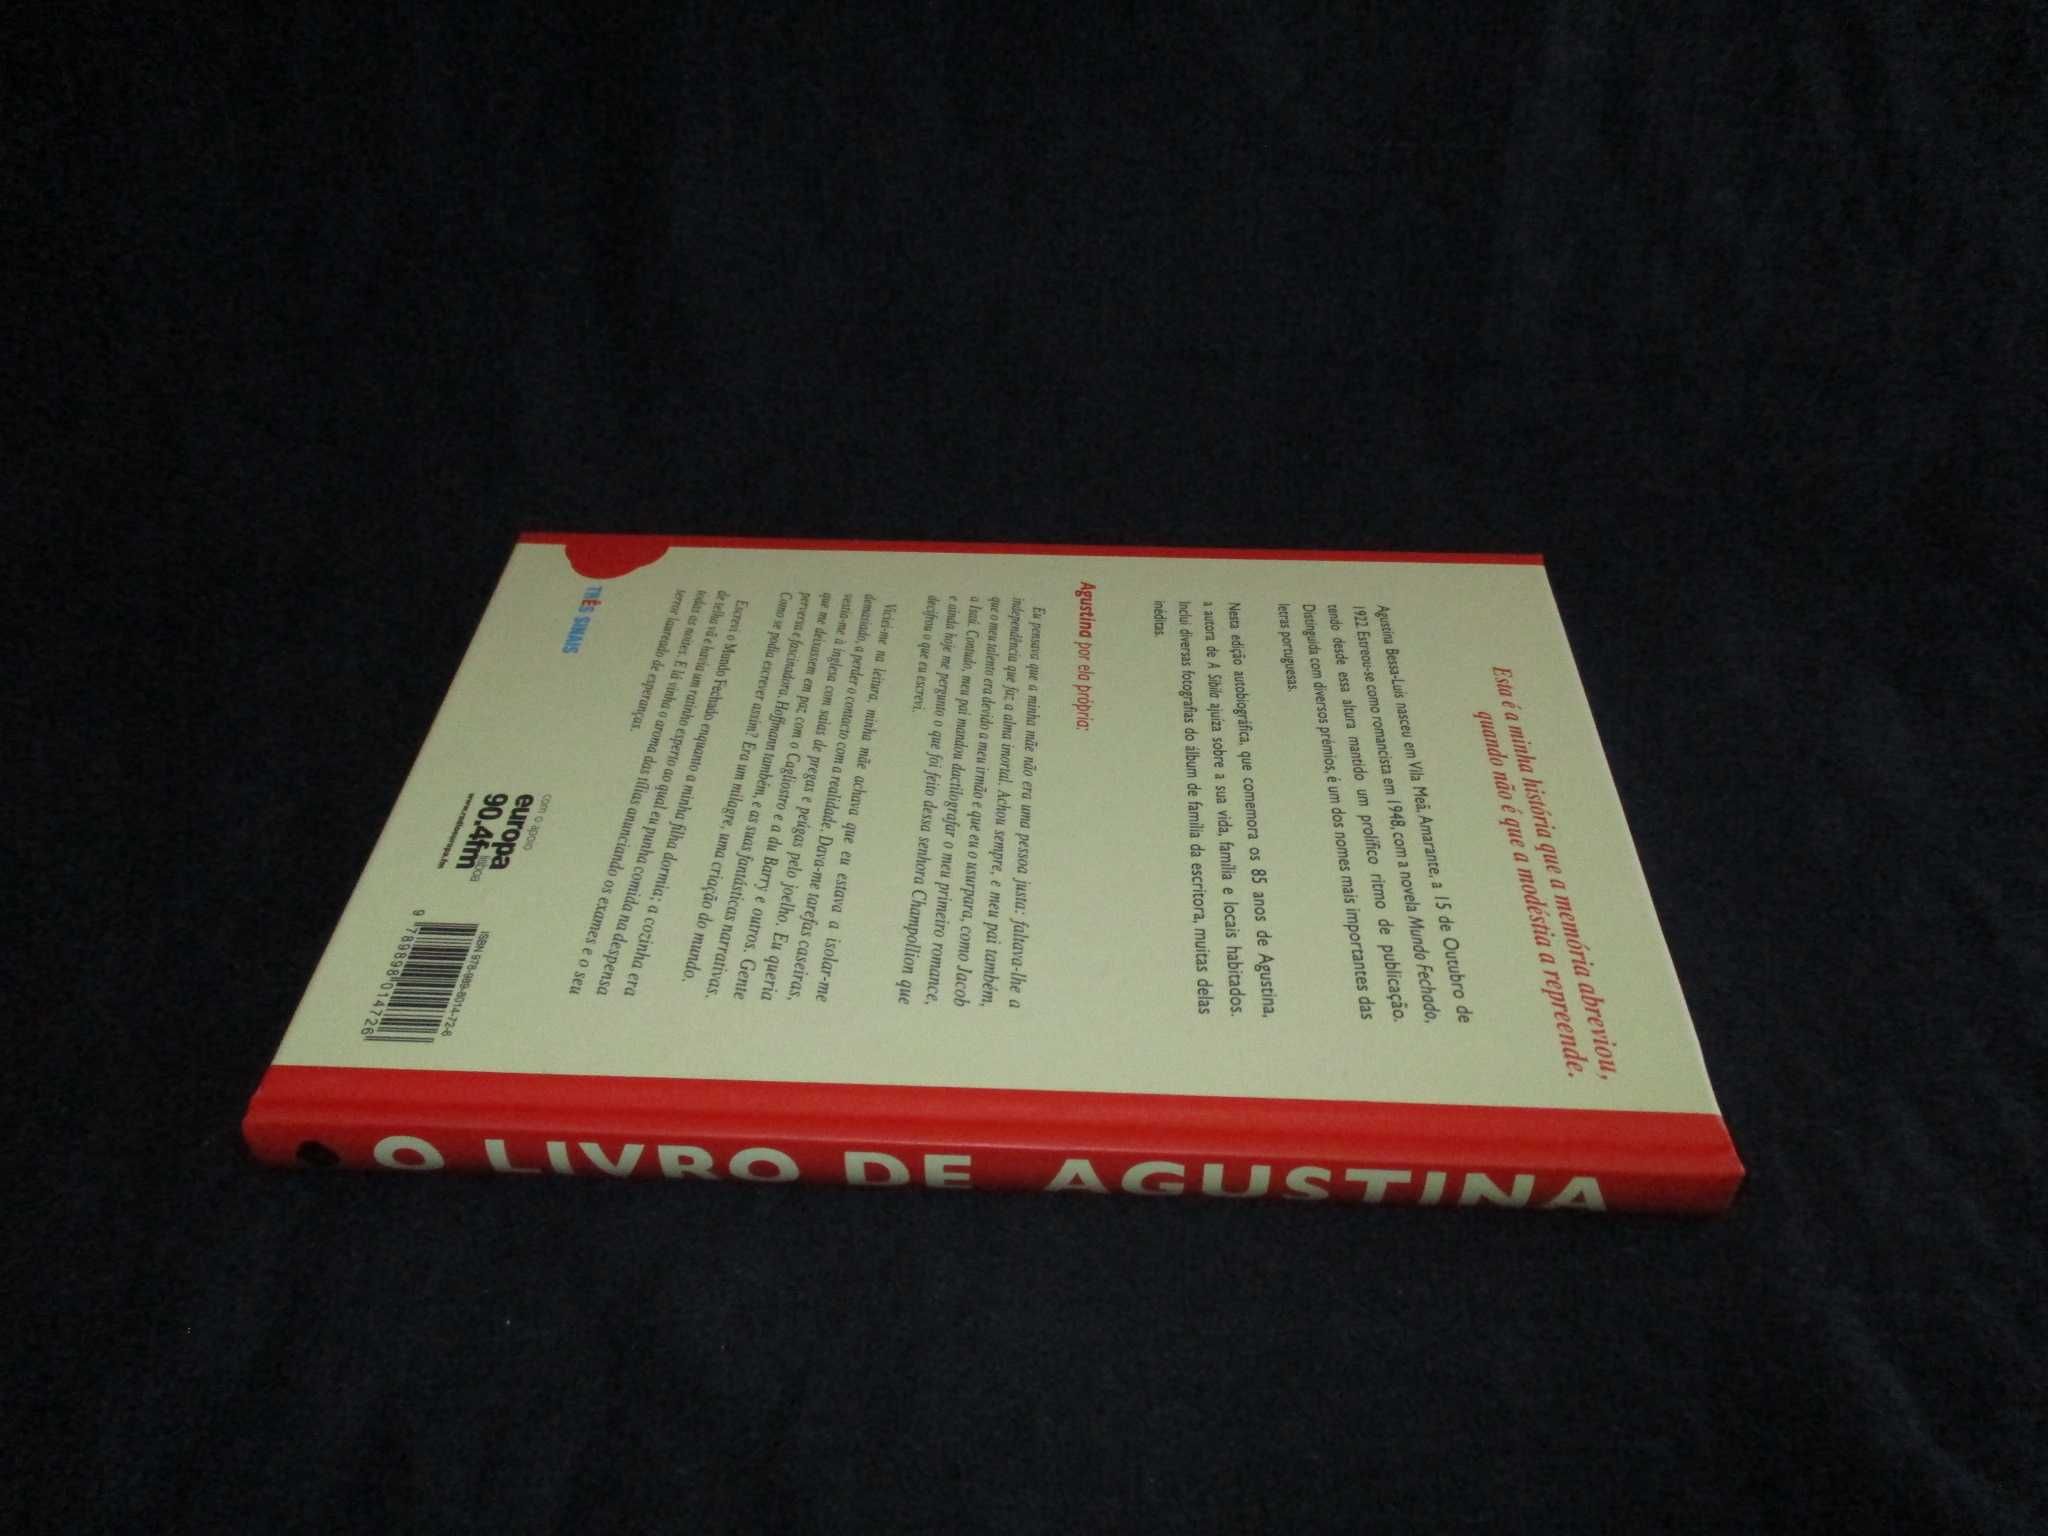 O Livro de Agustina Bessa-Luís